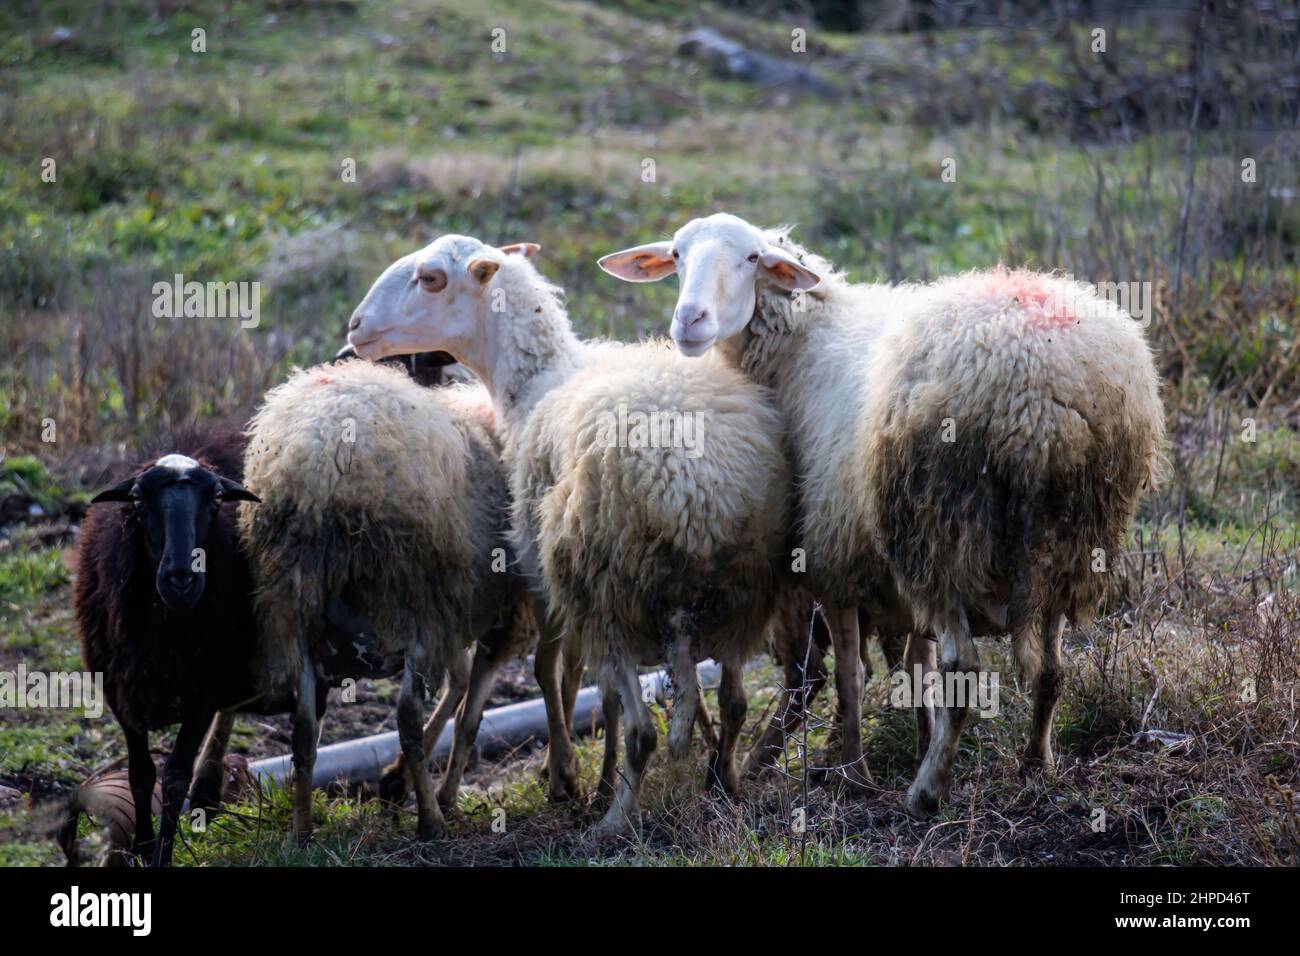 Schafschar auf der Weide. Vier Wiederkäuer Säugetier Tier mit dicken Wollmantel bei grasen. Lamm- und Mutterschaffarm. Zwei betrachten die Kamera. Stockfoto